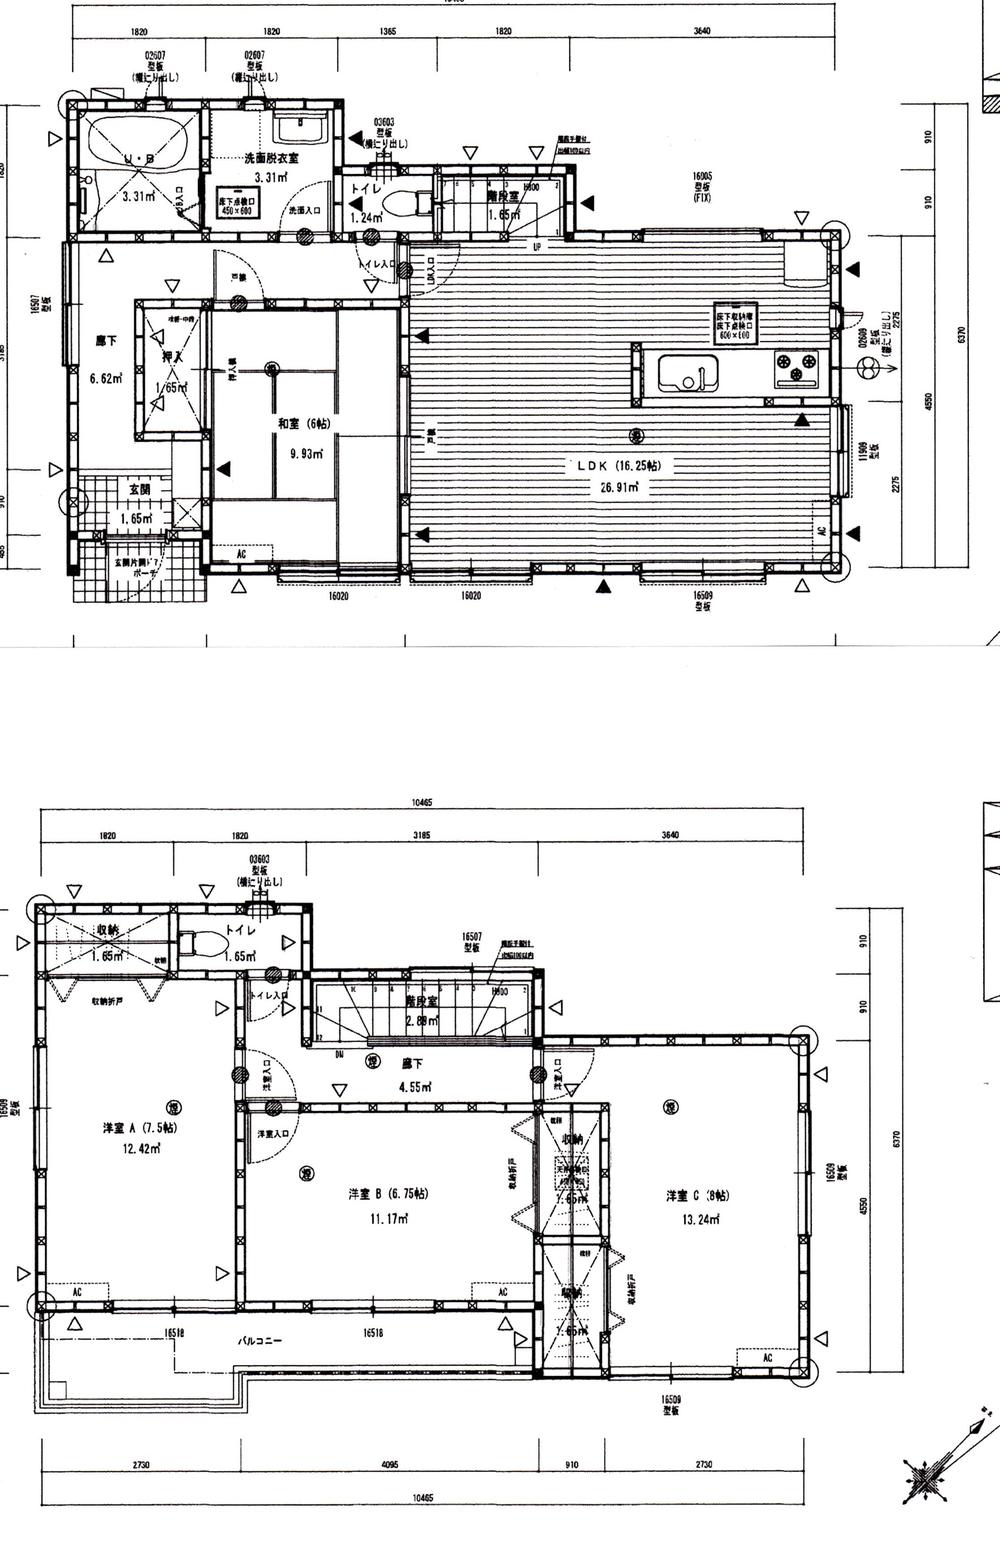 Floor plan. 28,980,000 yen, 4LDK, Land area 131.26 sq m , Building area 107.23 sq m floor plan